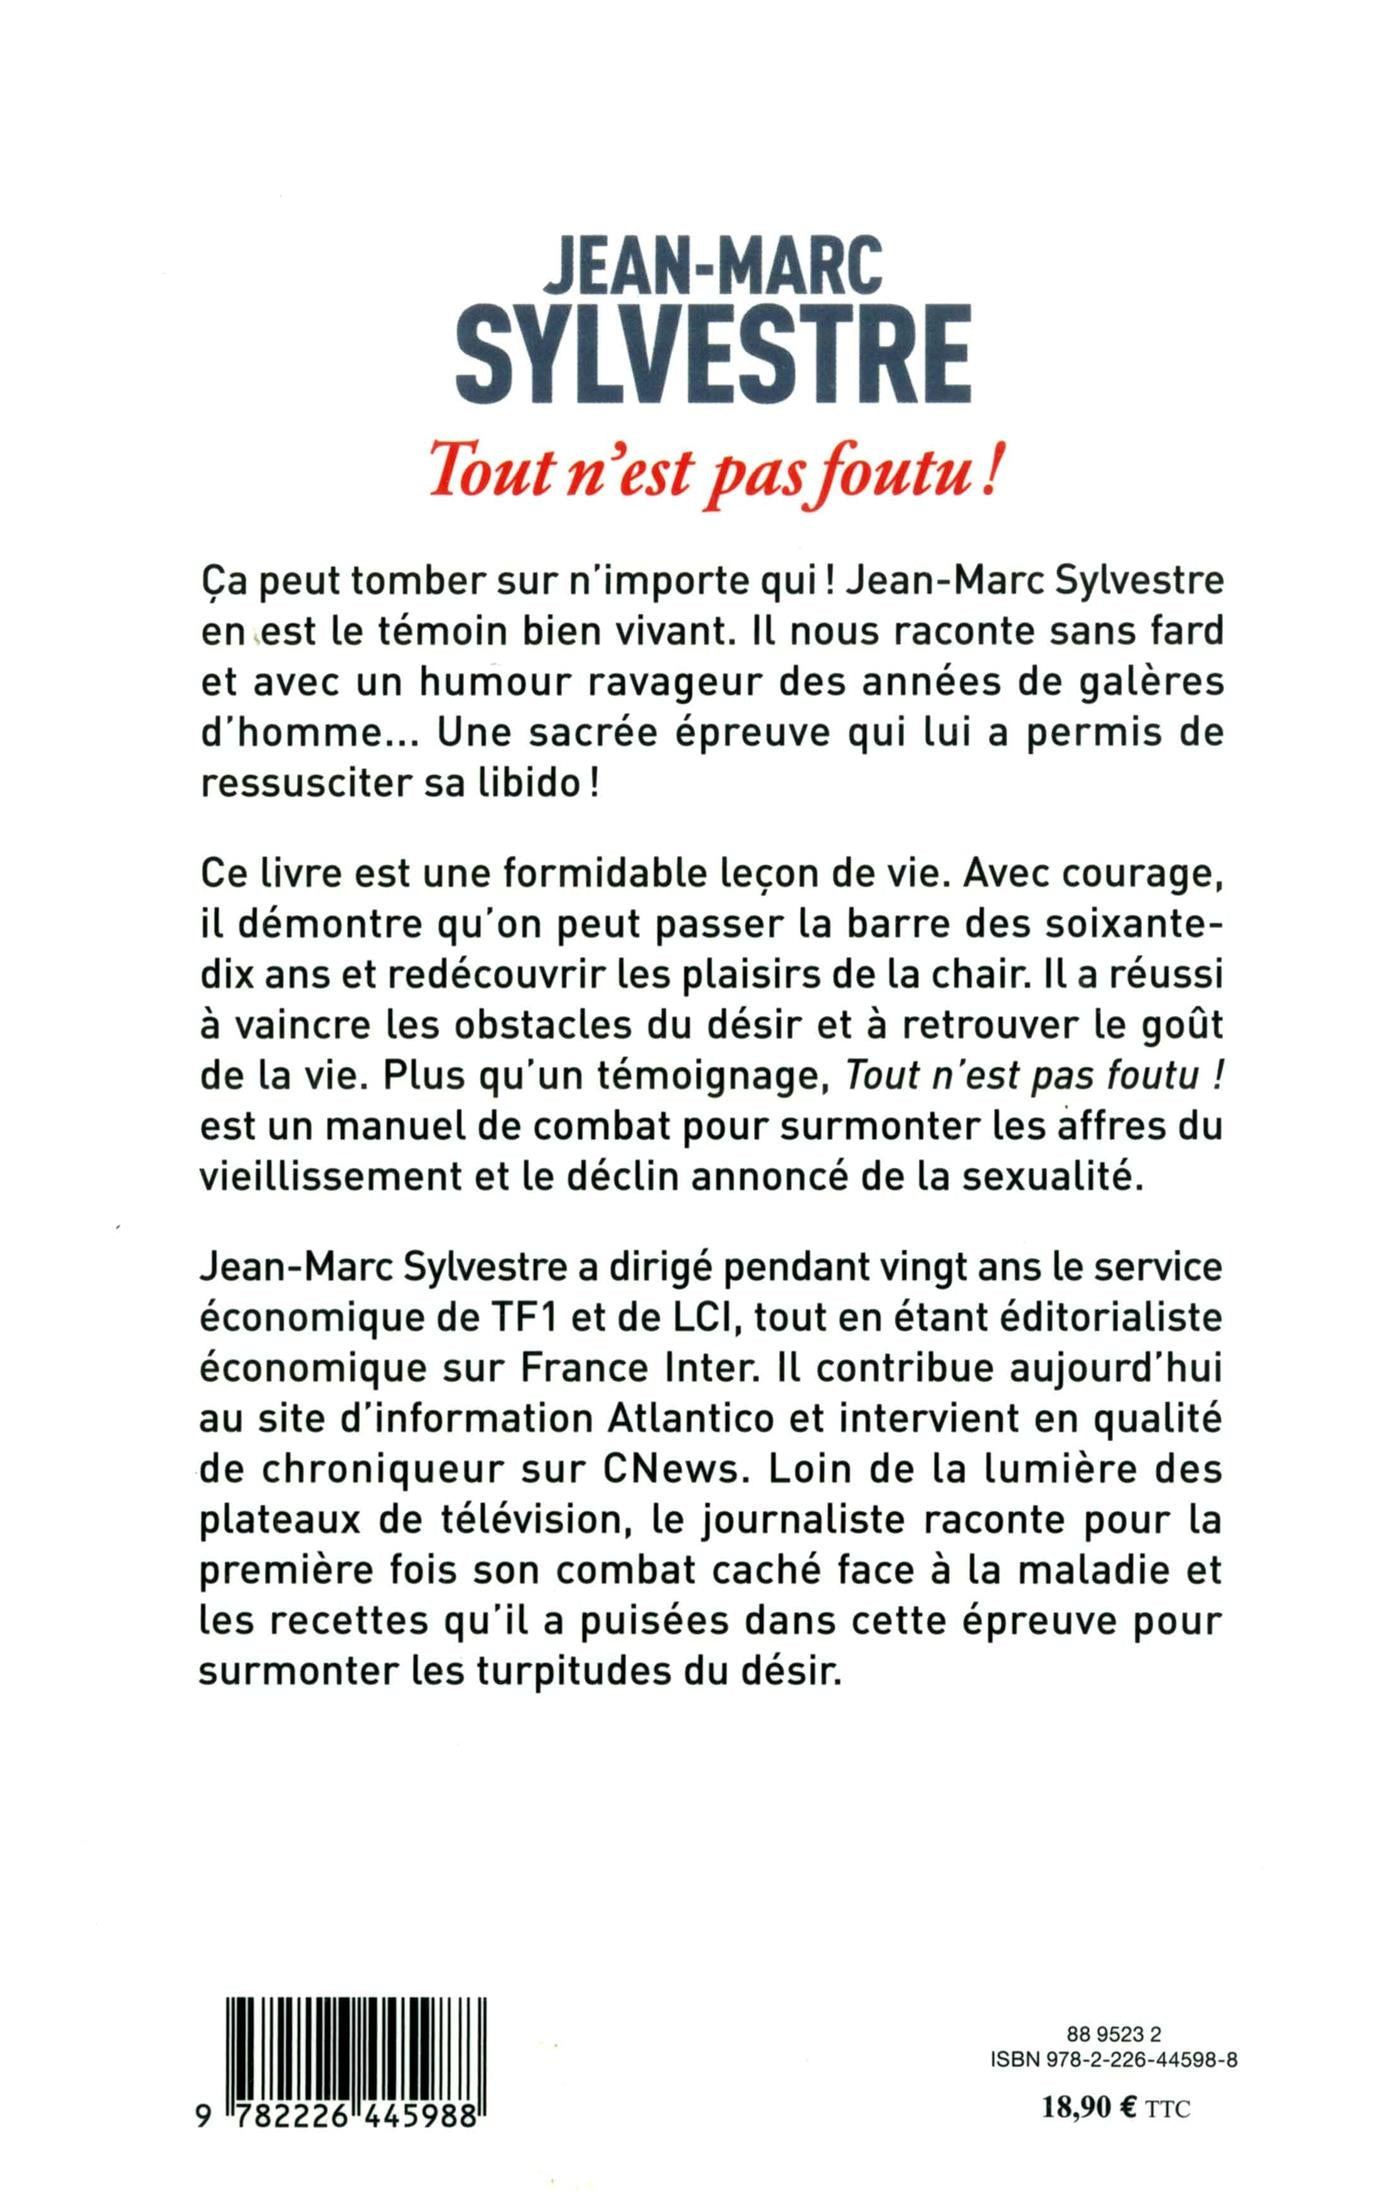 Jean-Marc Sylvestre - La biographie de Jean-Marc Sylvestre avec